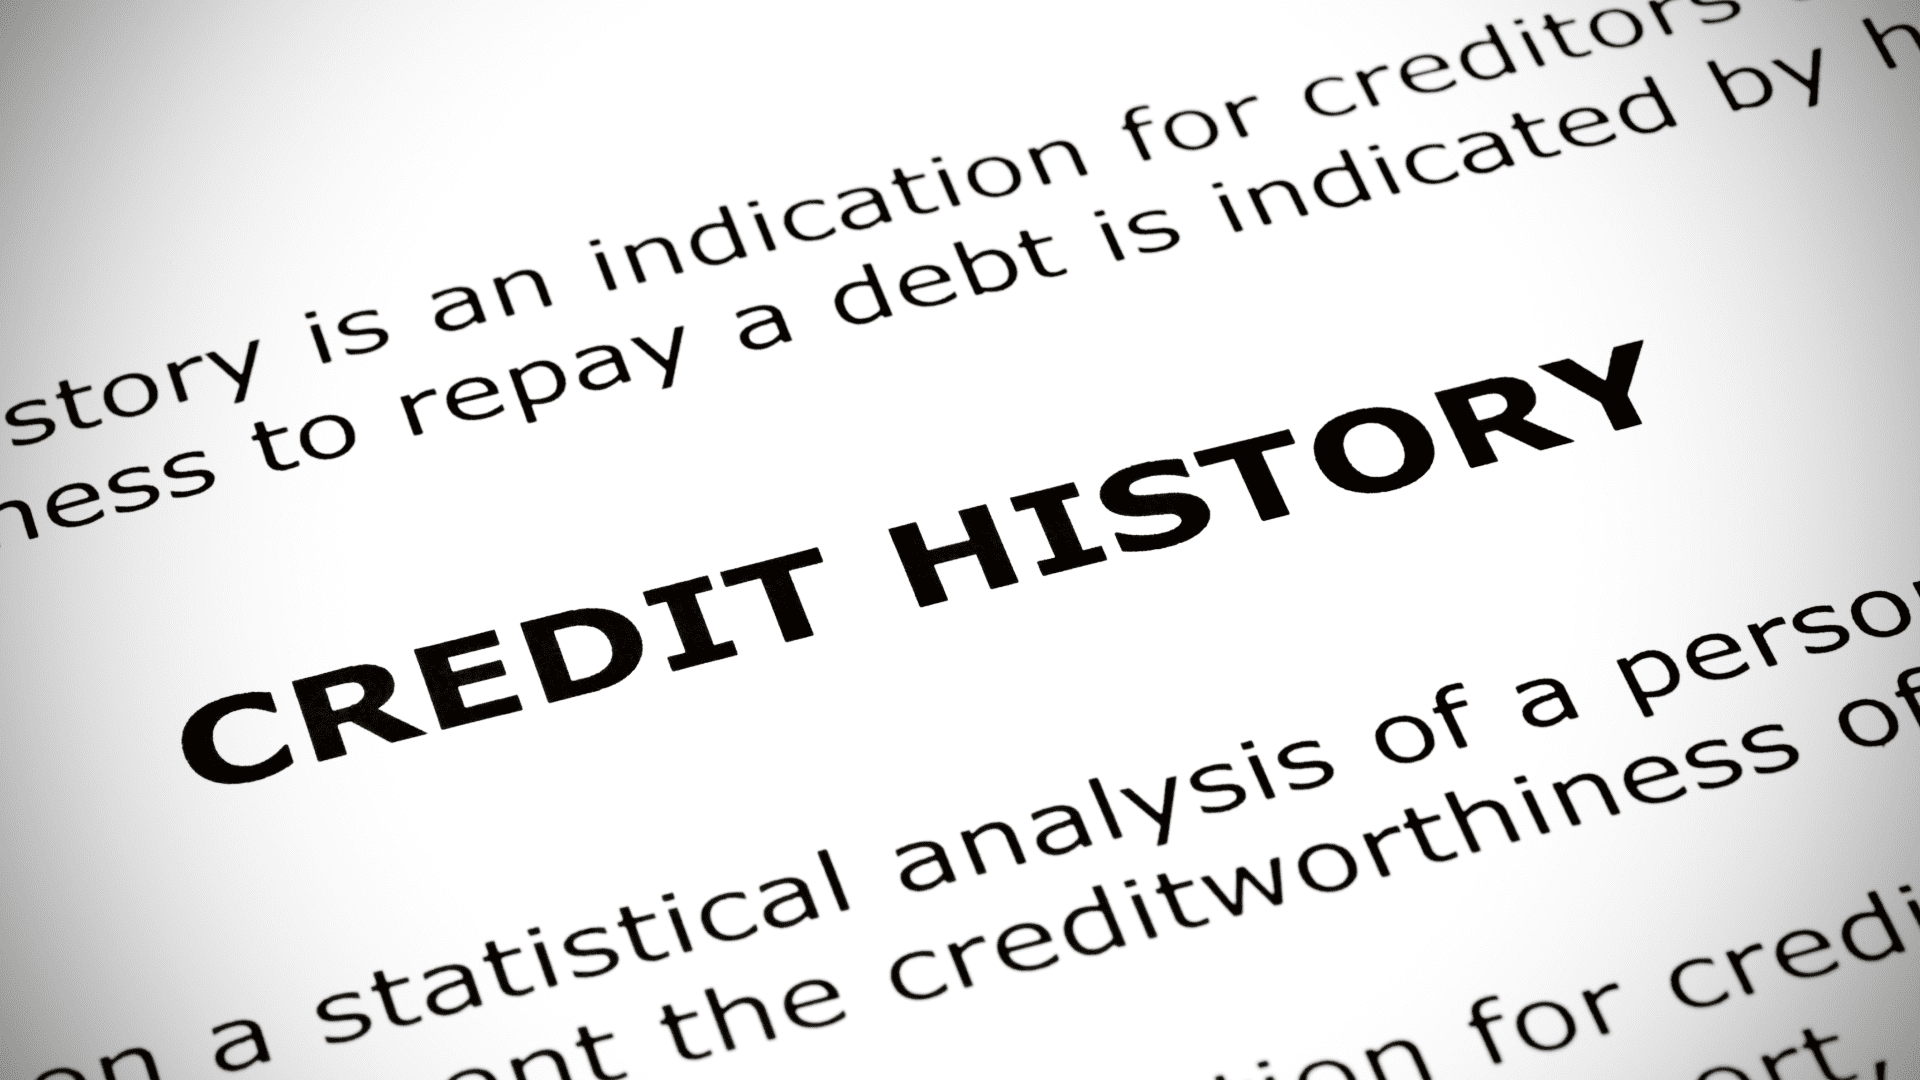 historial crediticio impreso en papel blanco